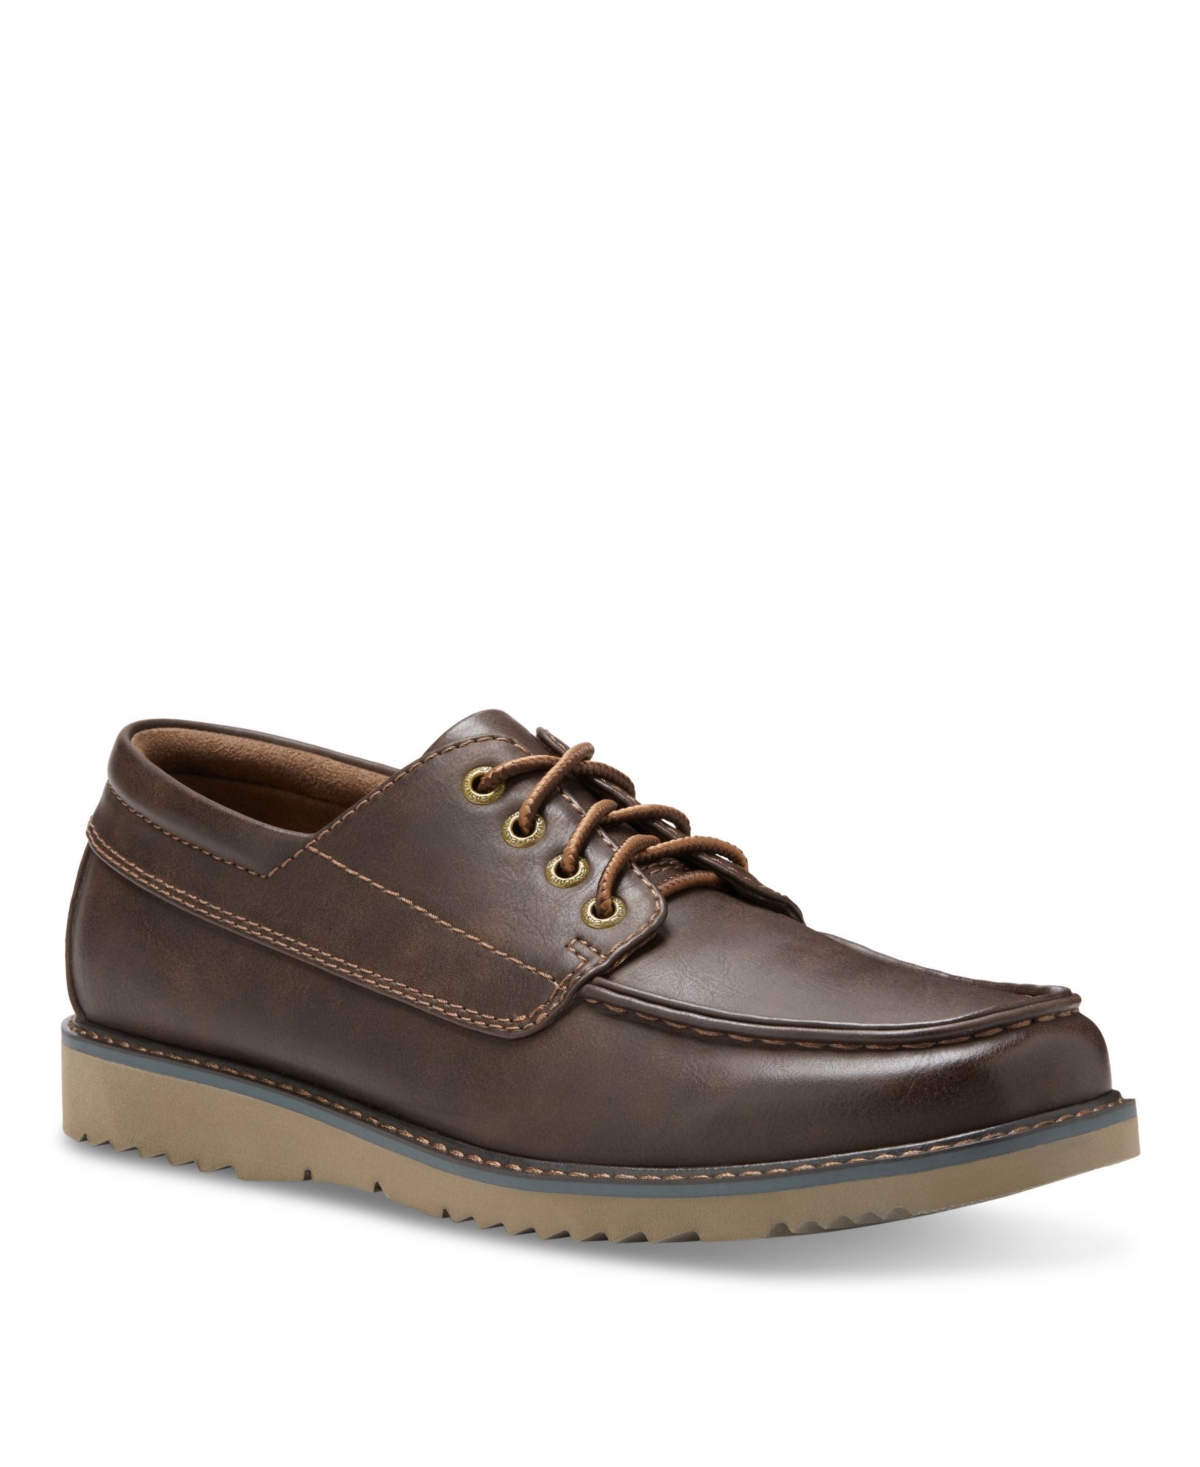 Eastland Shoe Men's Jed Moc Toe Oxford Shoes Men's Shoes